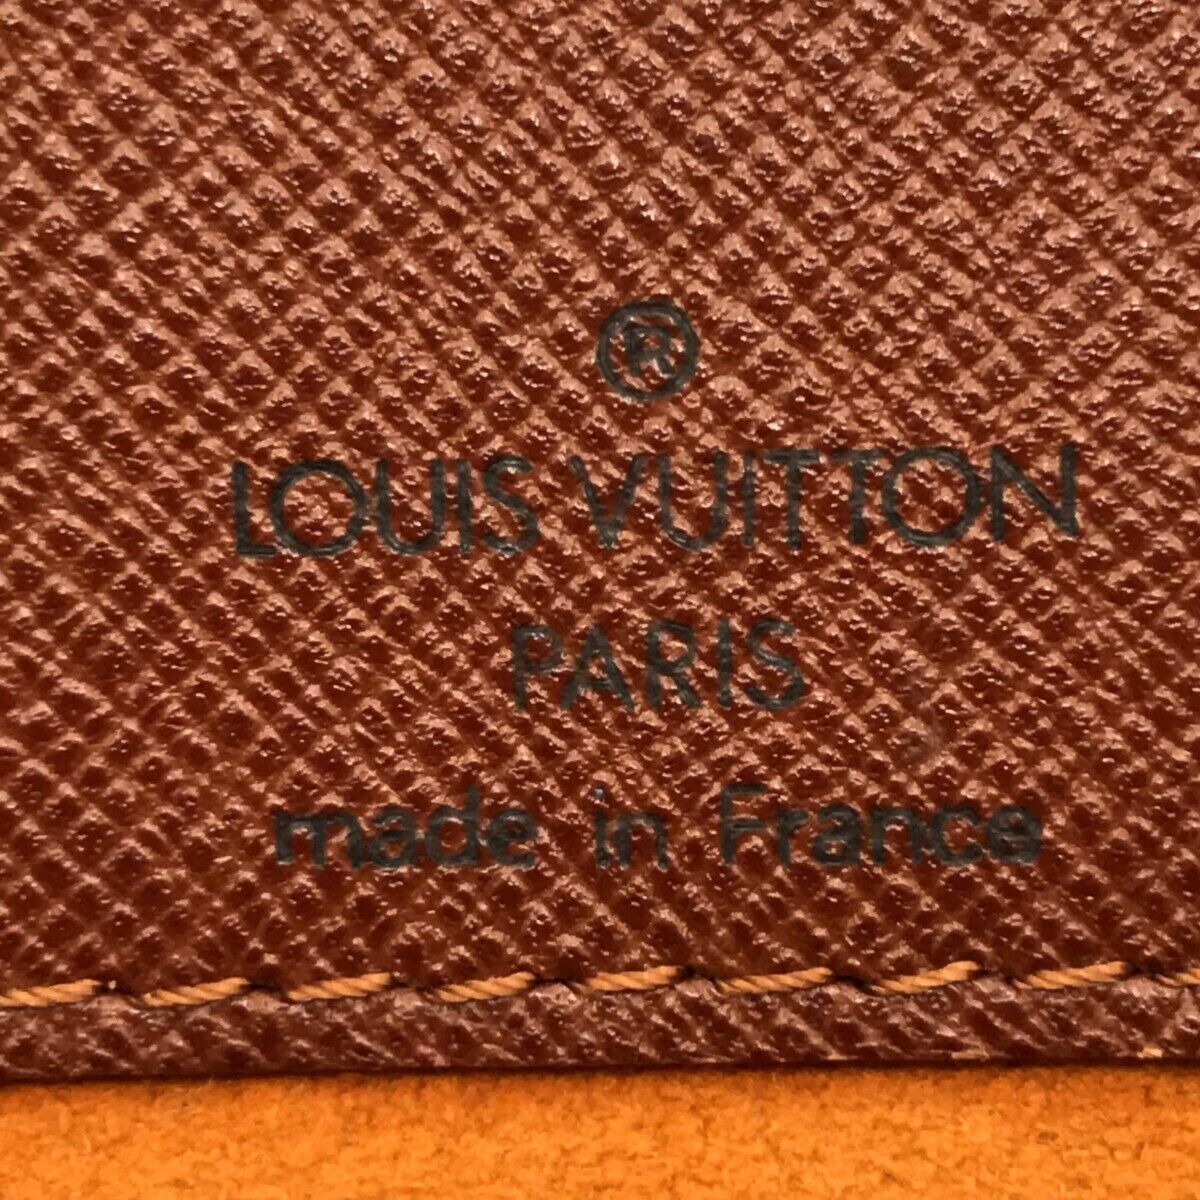 Authentic Louis-Vuitton Musette GM Crossbody Shoulder Bag M51256 *Rank AB*